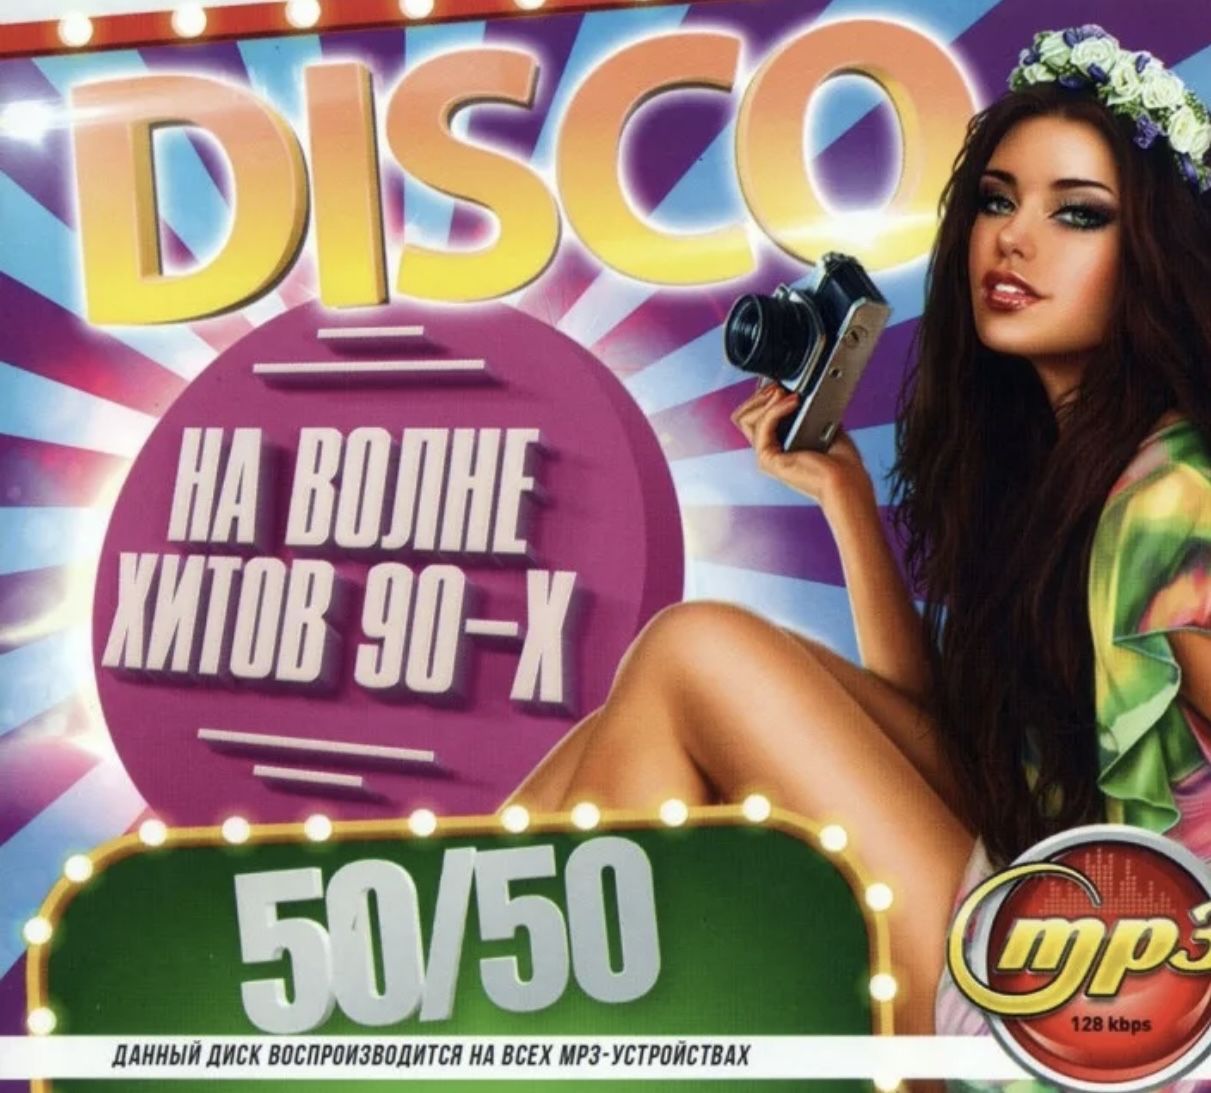 Сборник хитов 80 90 слушать русские. Хиты 90-х. Музыкальный диск 90-х. Самые популярные музыкальные диски. Хиты 90-х и 00-х.